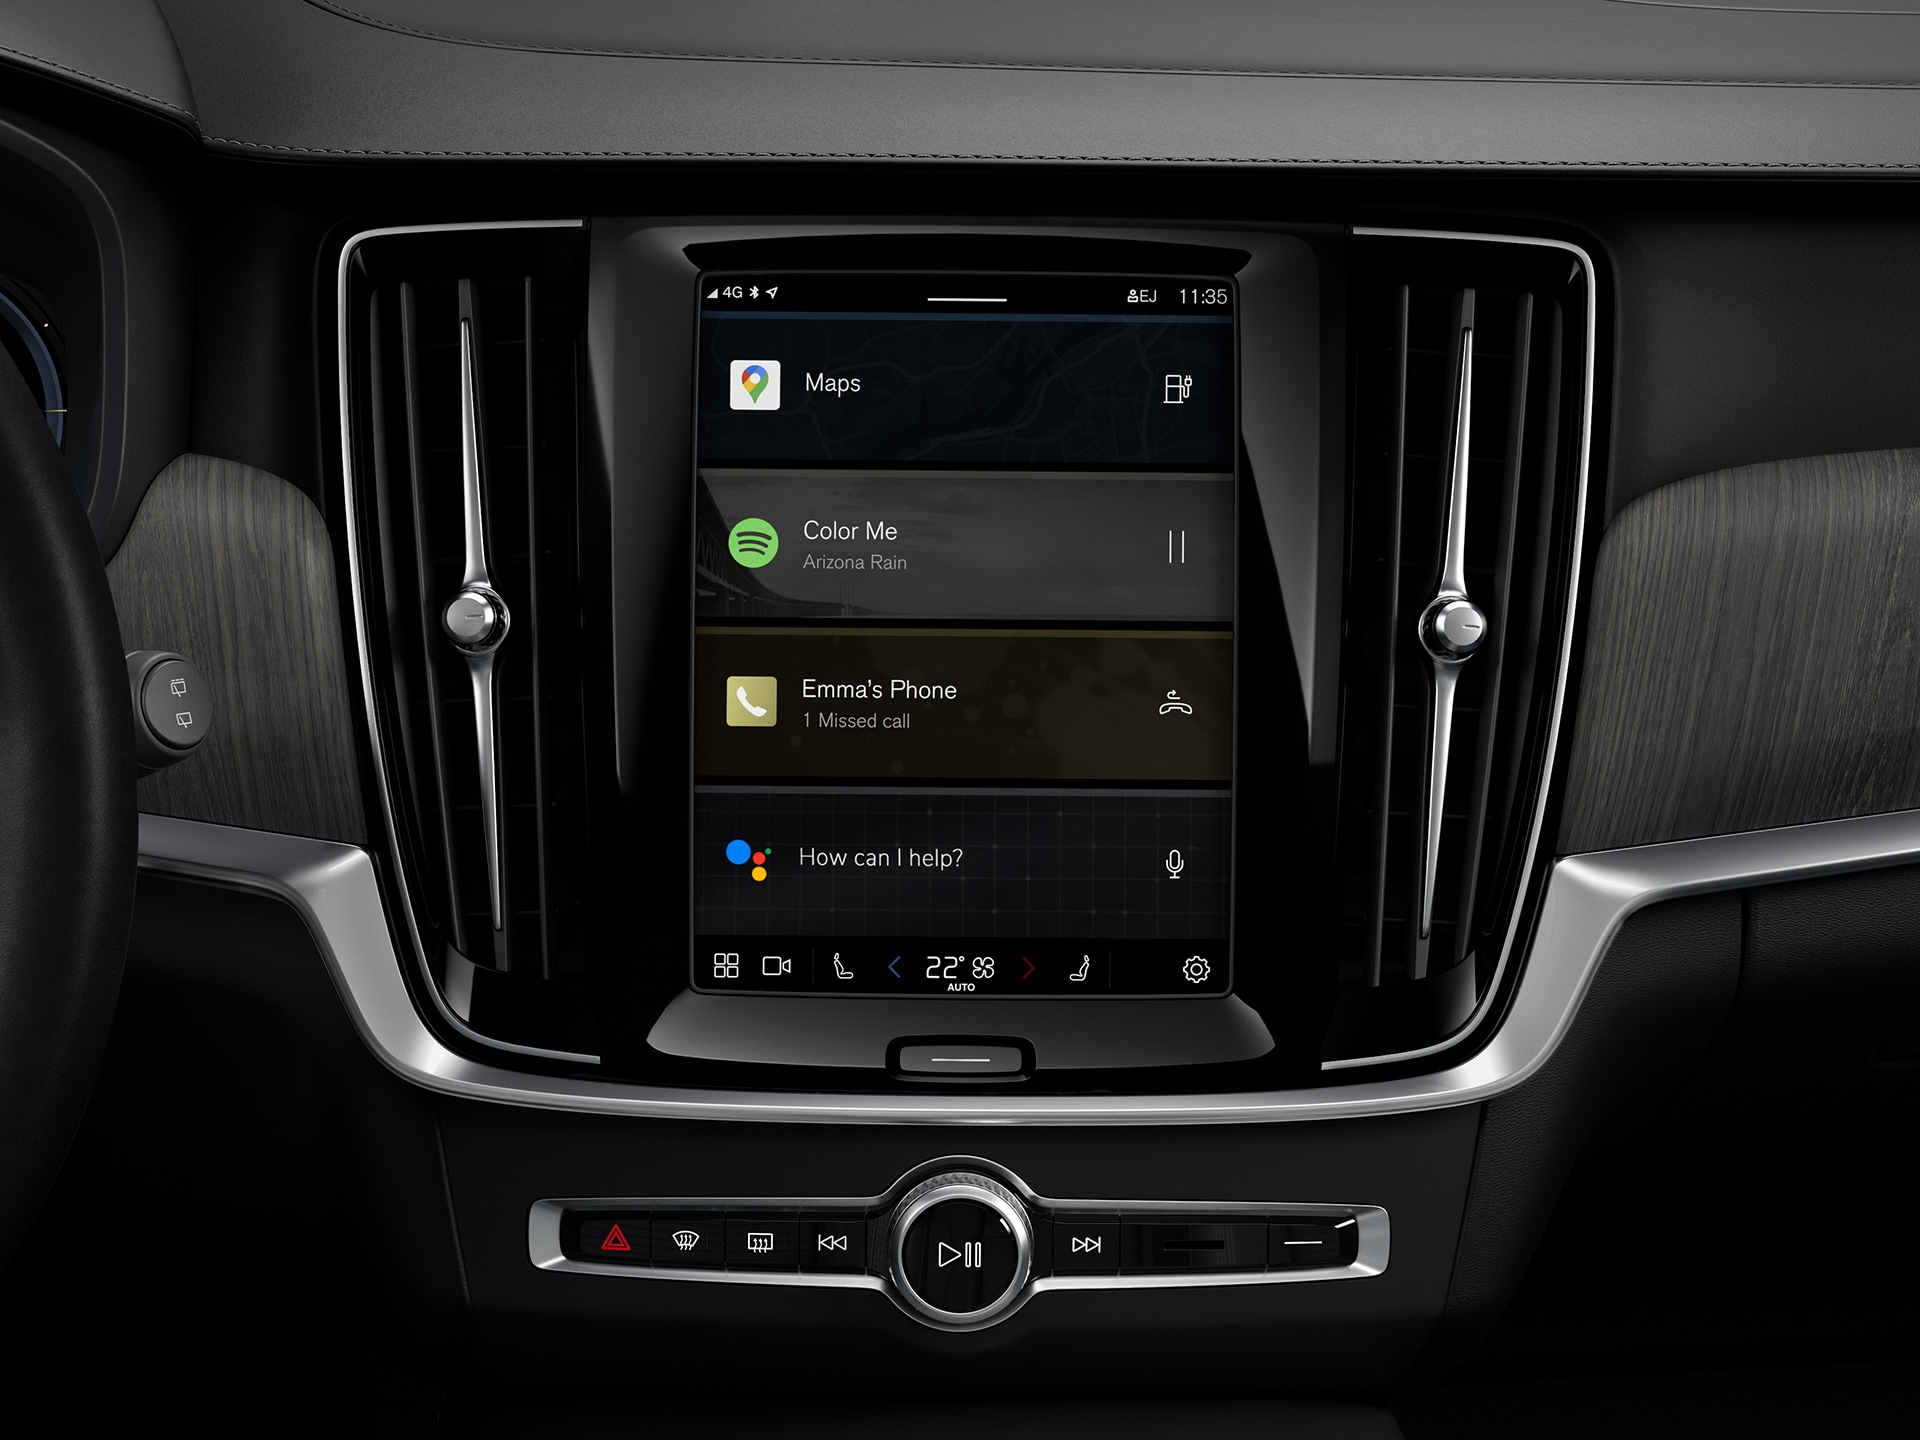 คอนโซลกลางใน Volvo เอสเตท แสดงระบบสาระบันเทิงของ Google ที่ติดตั้งมาพร้อมกับรถ